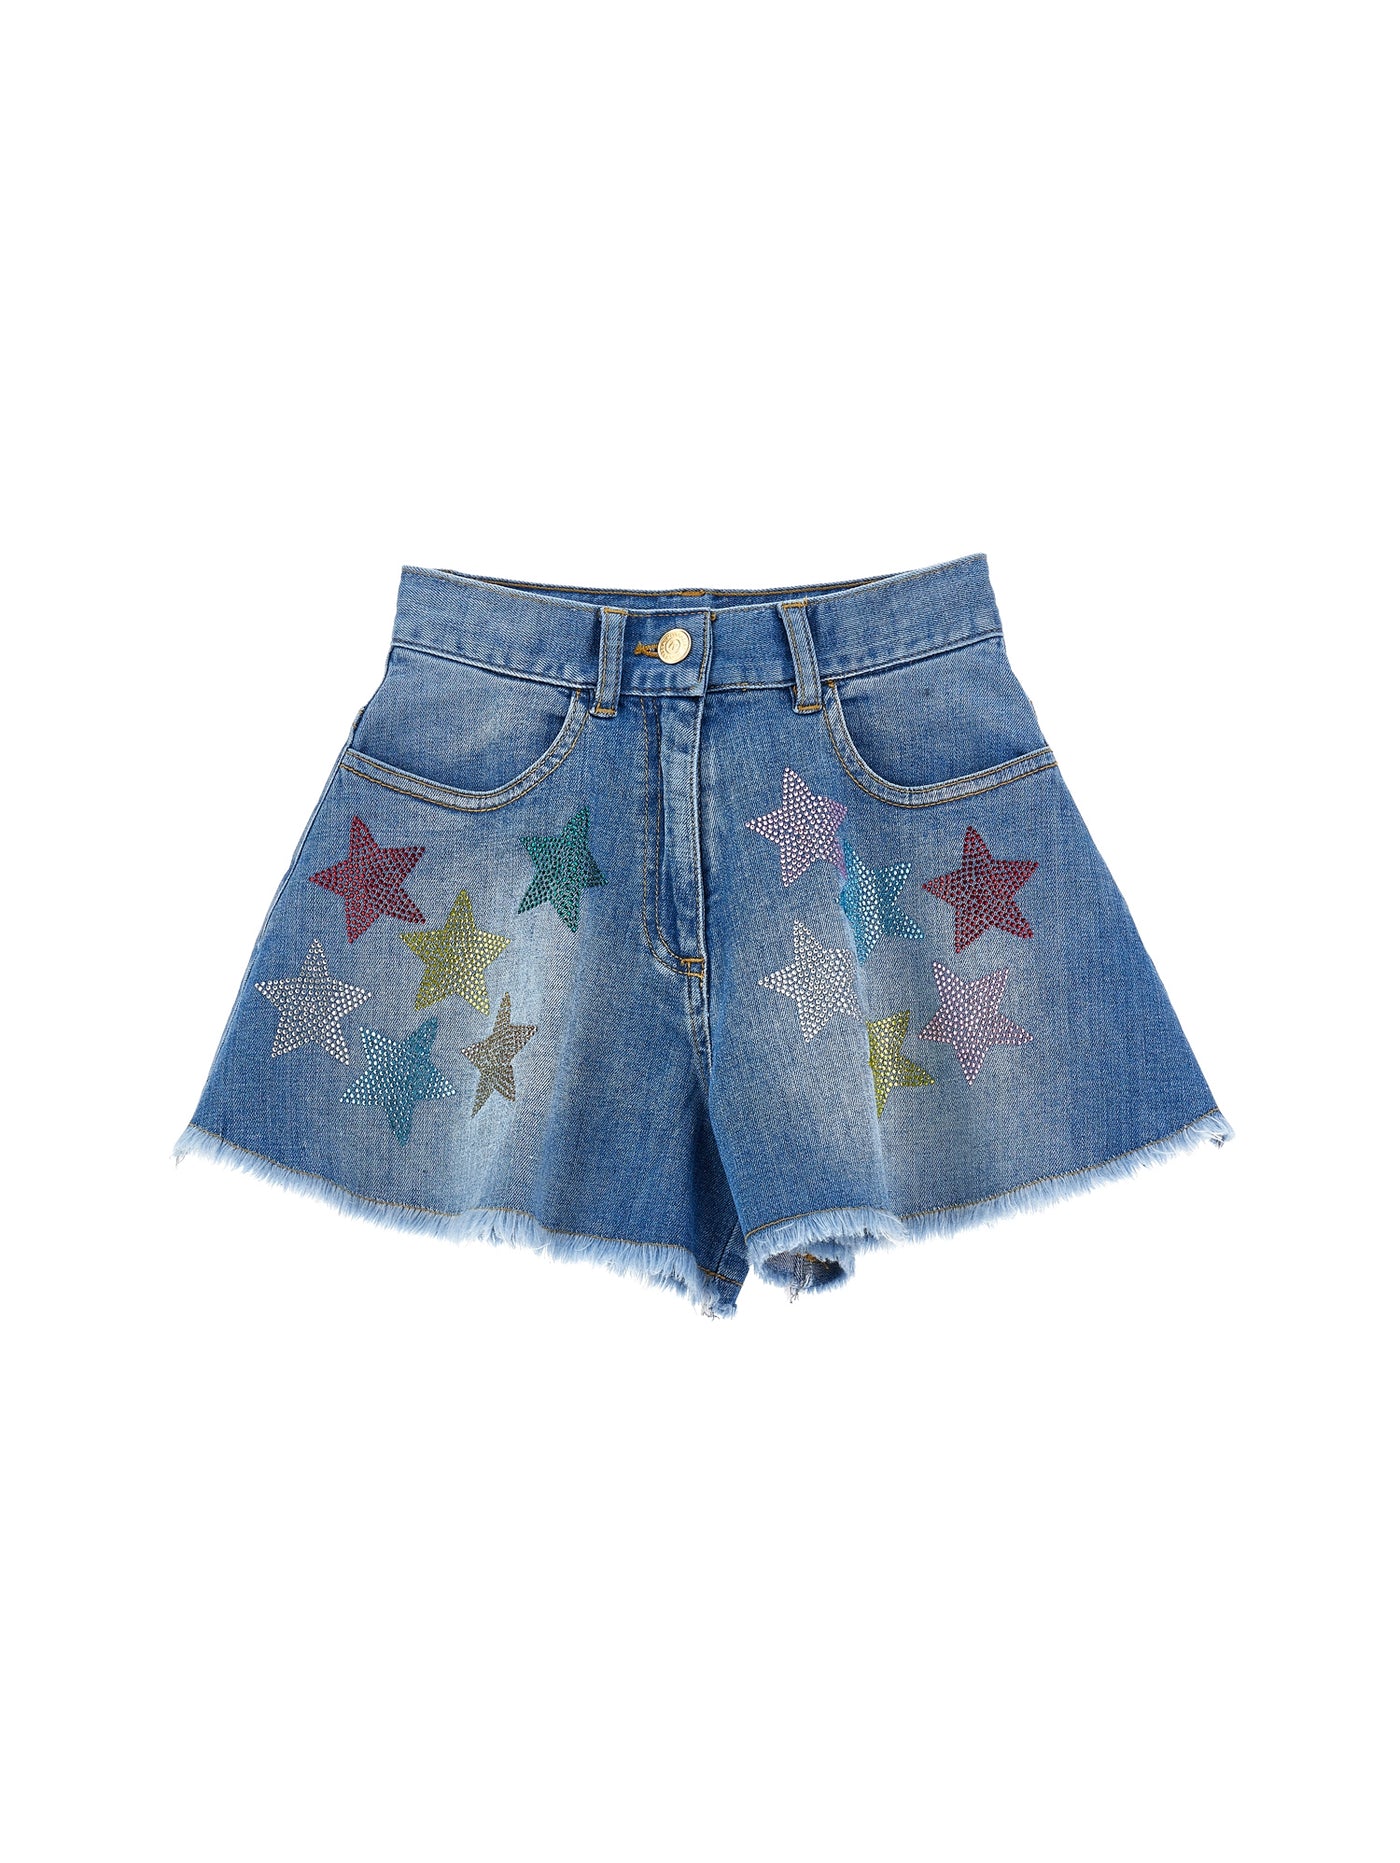 Monnalisa - Denim shorts with stars